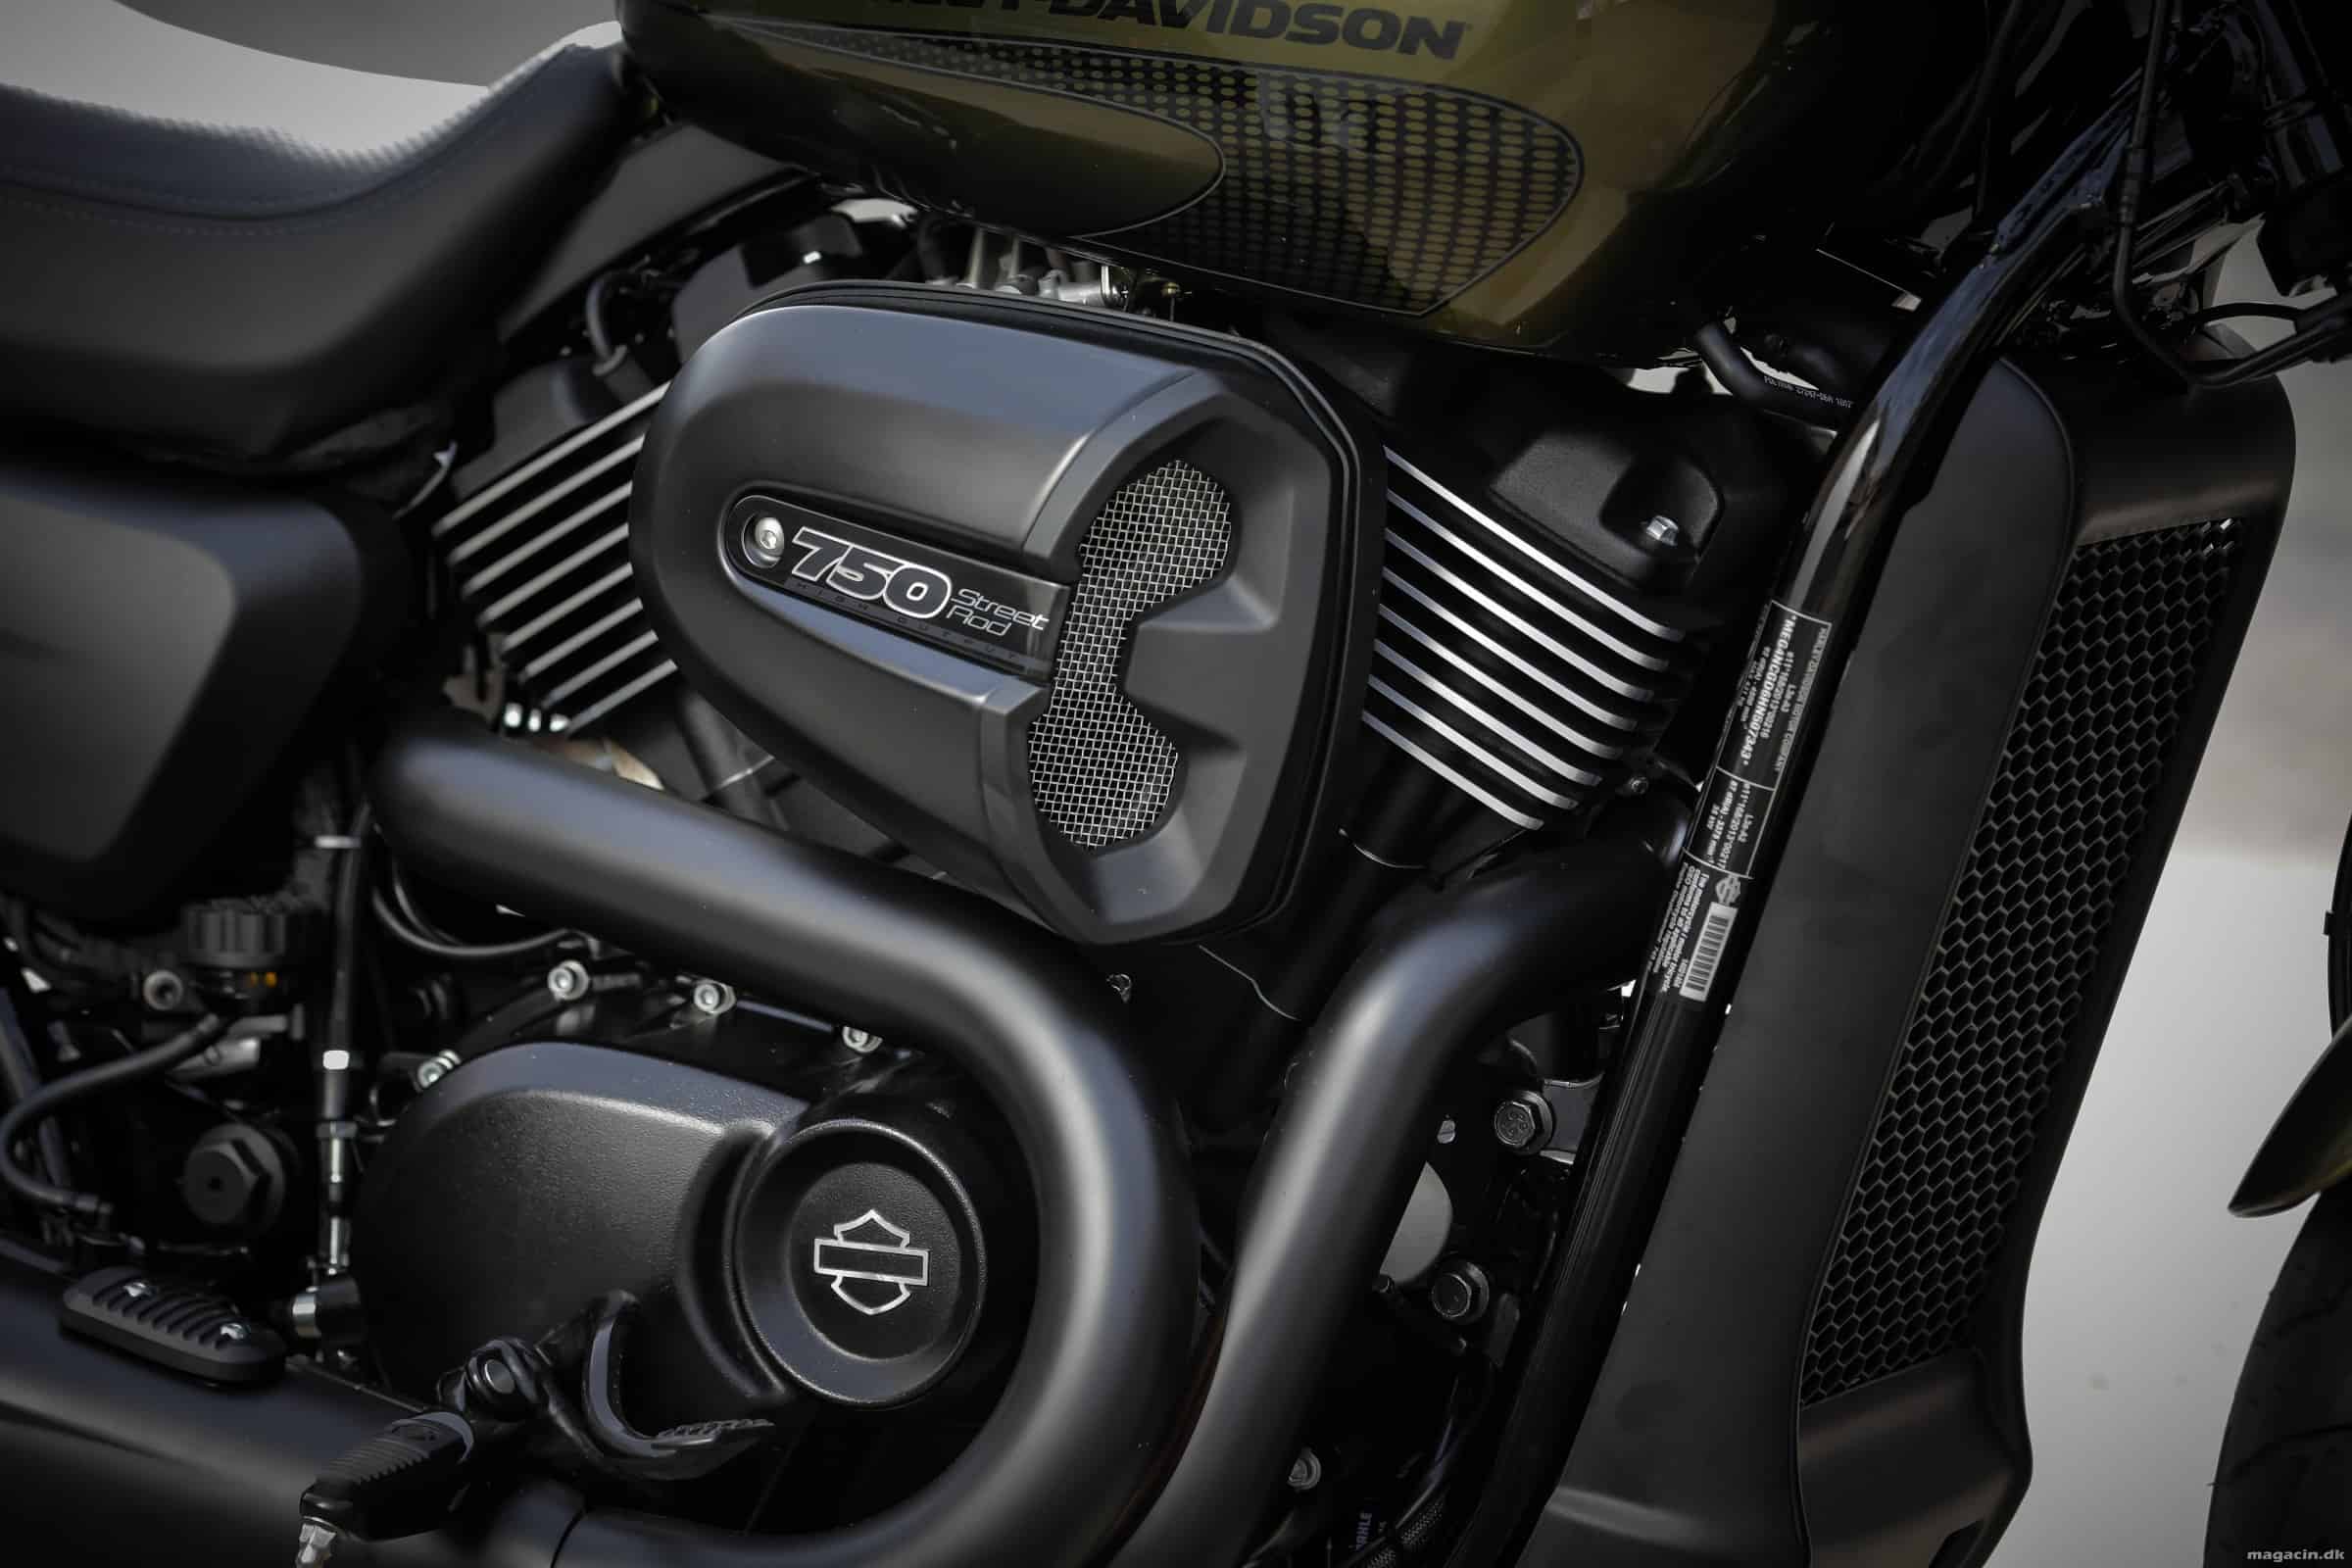 Prøvekørt: 2017 Harley-Davidson 750 Street Rod – Fræk gadedreng